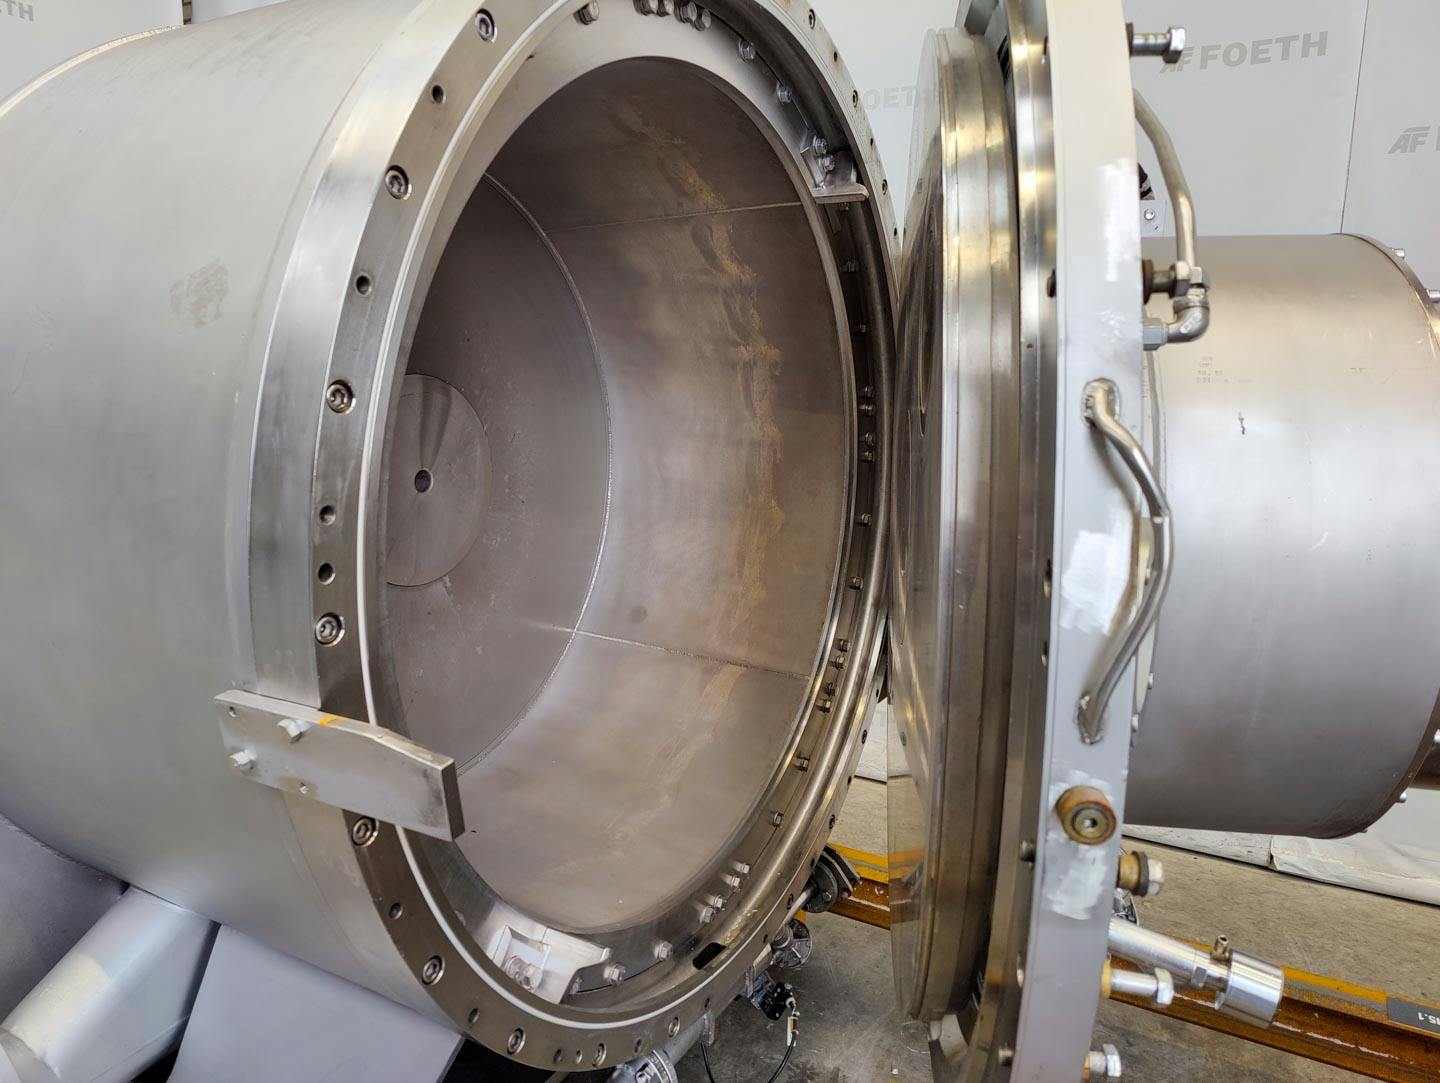 Fima Process Trockner TZT-1300 - centrifuge dryer - Košová odstredivka - image 6